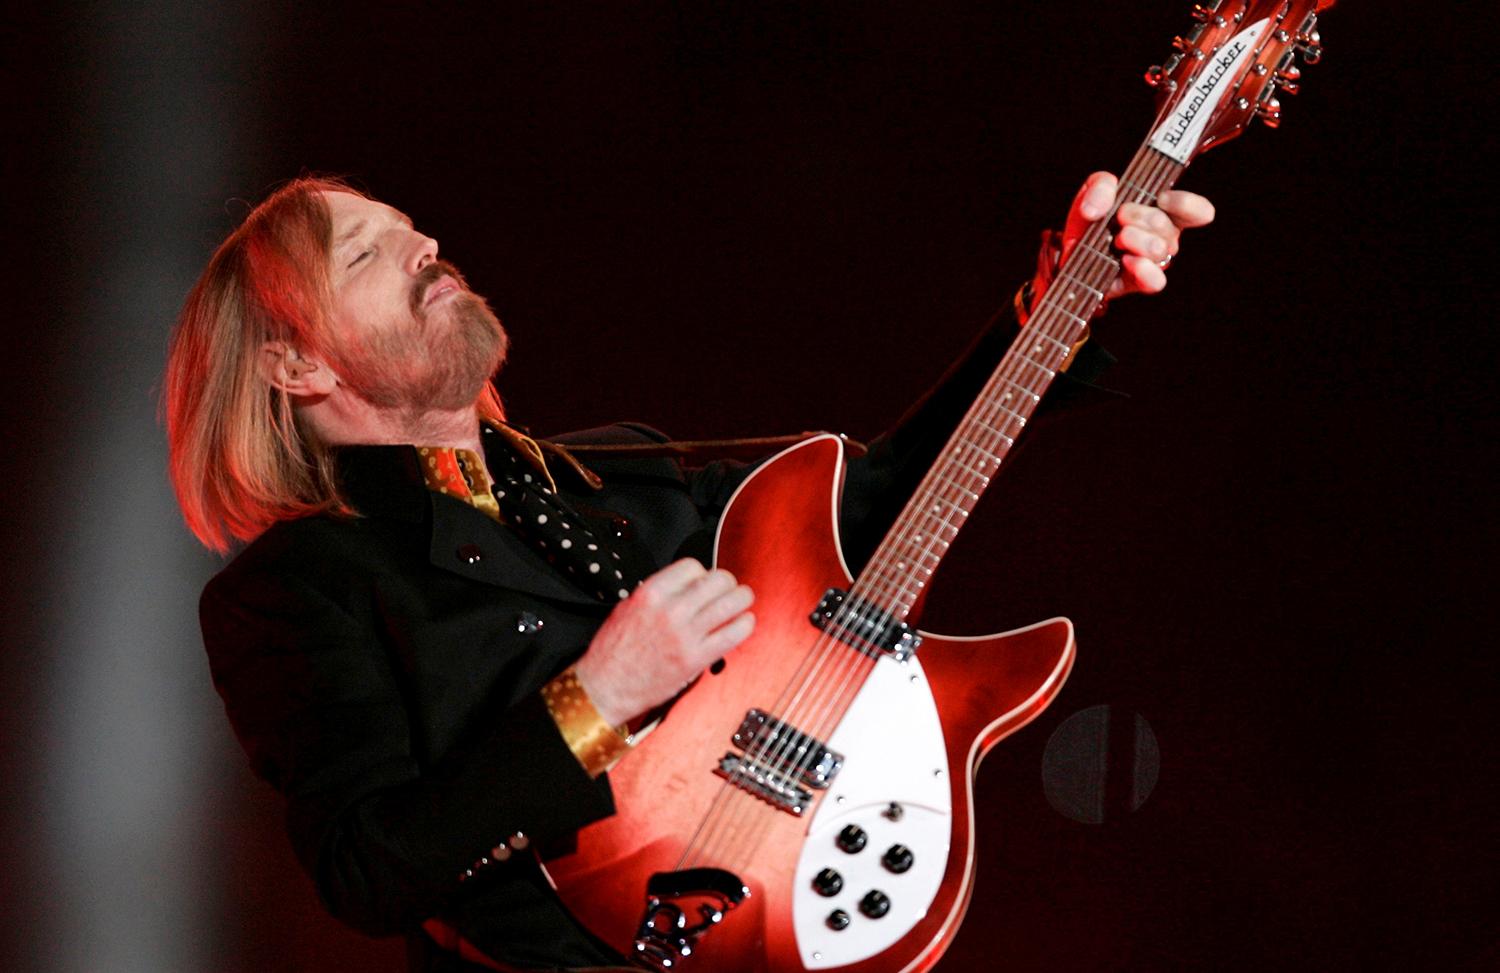 2008 uppträdde Tom Petty tillsammans med sitt band The Heartbreakers på Super Bowl.